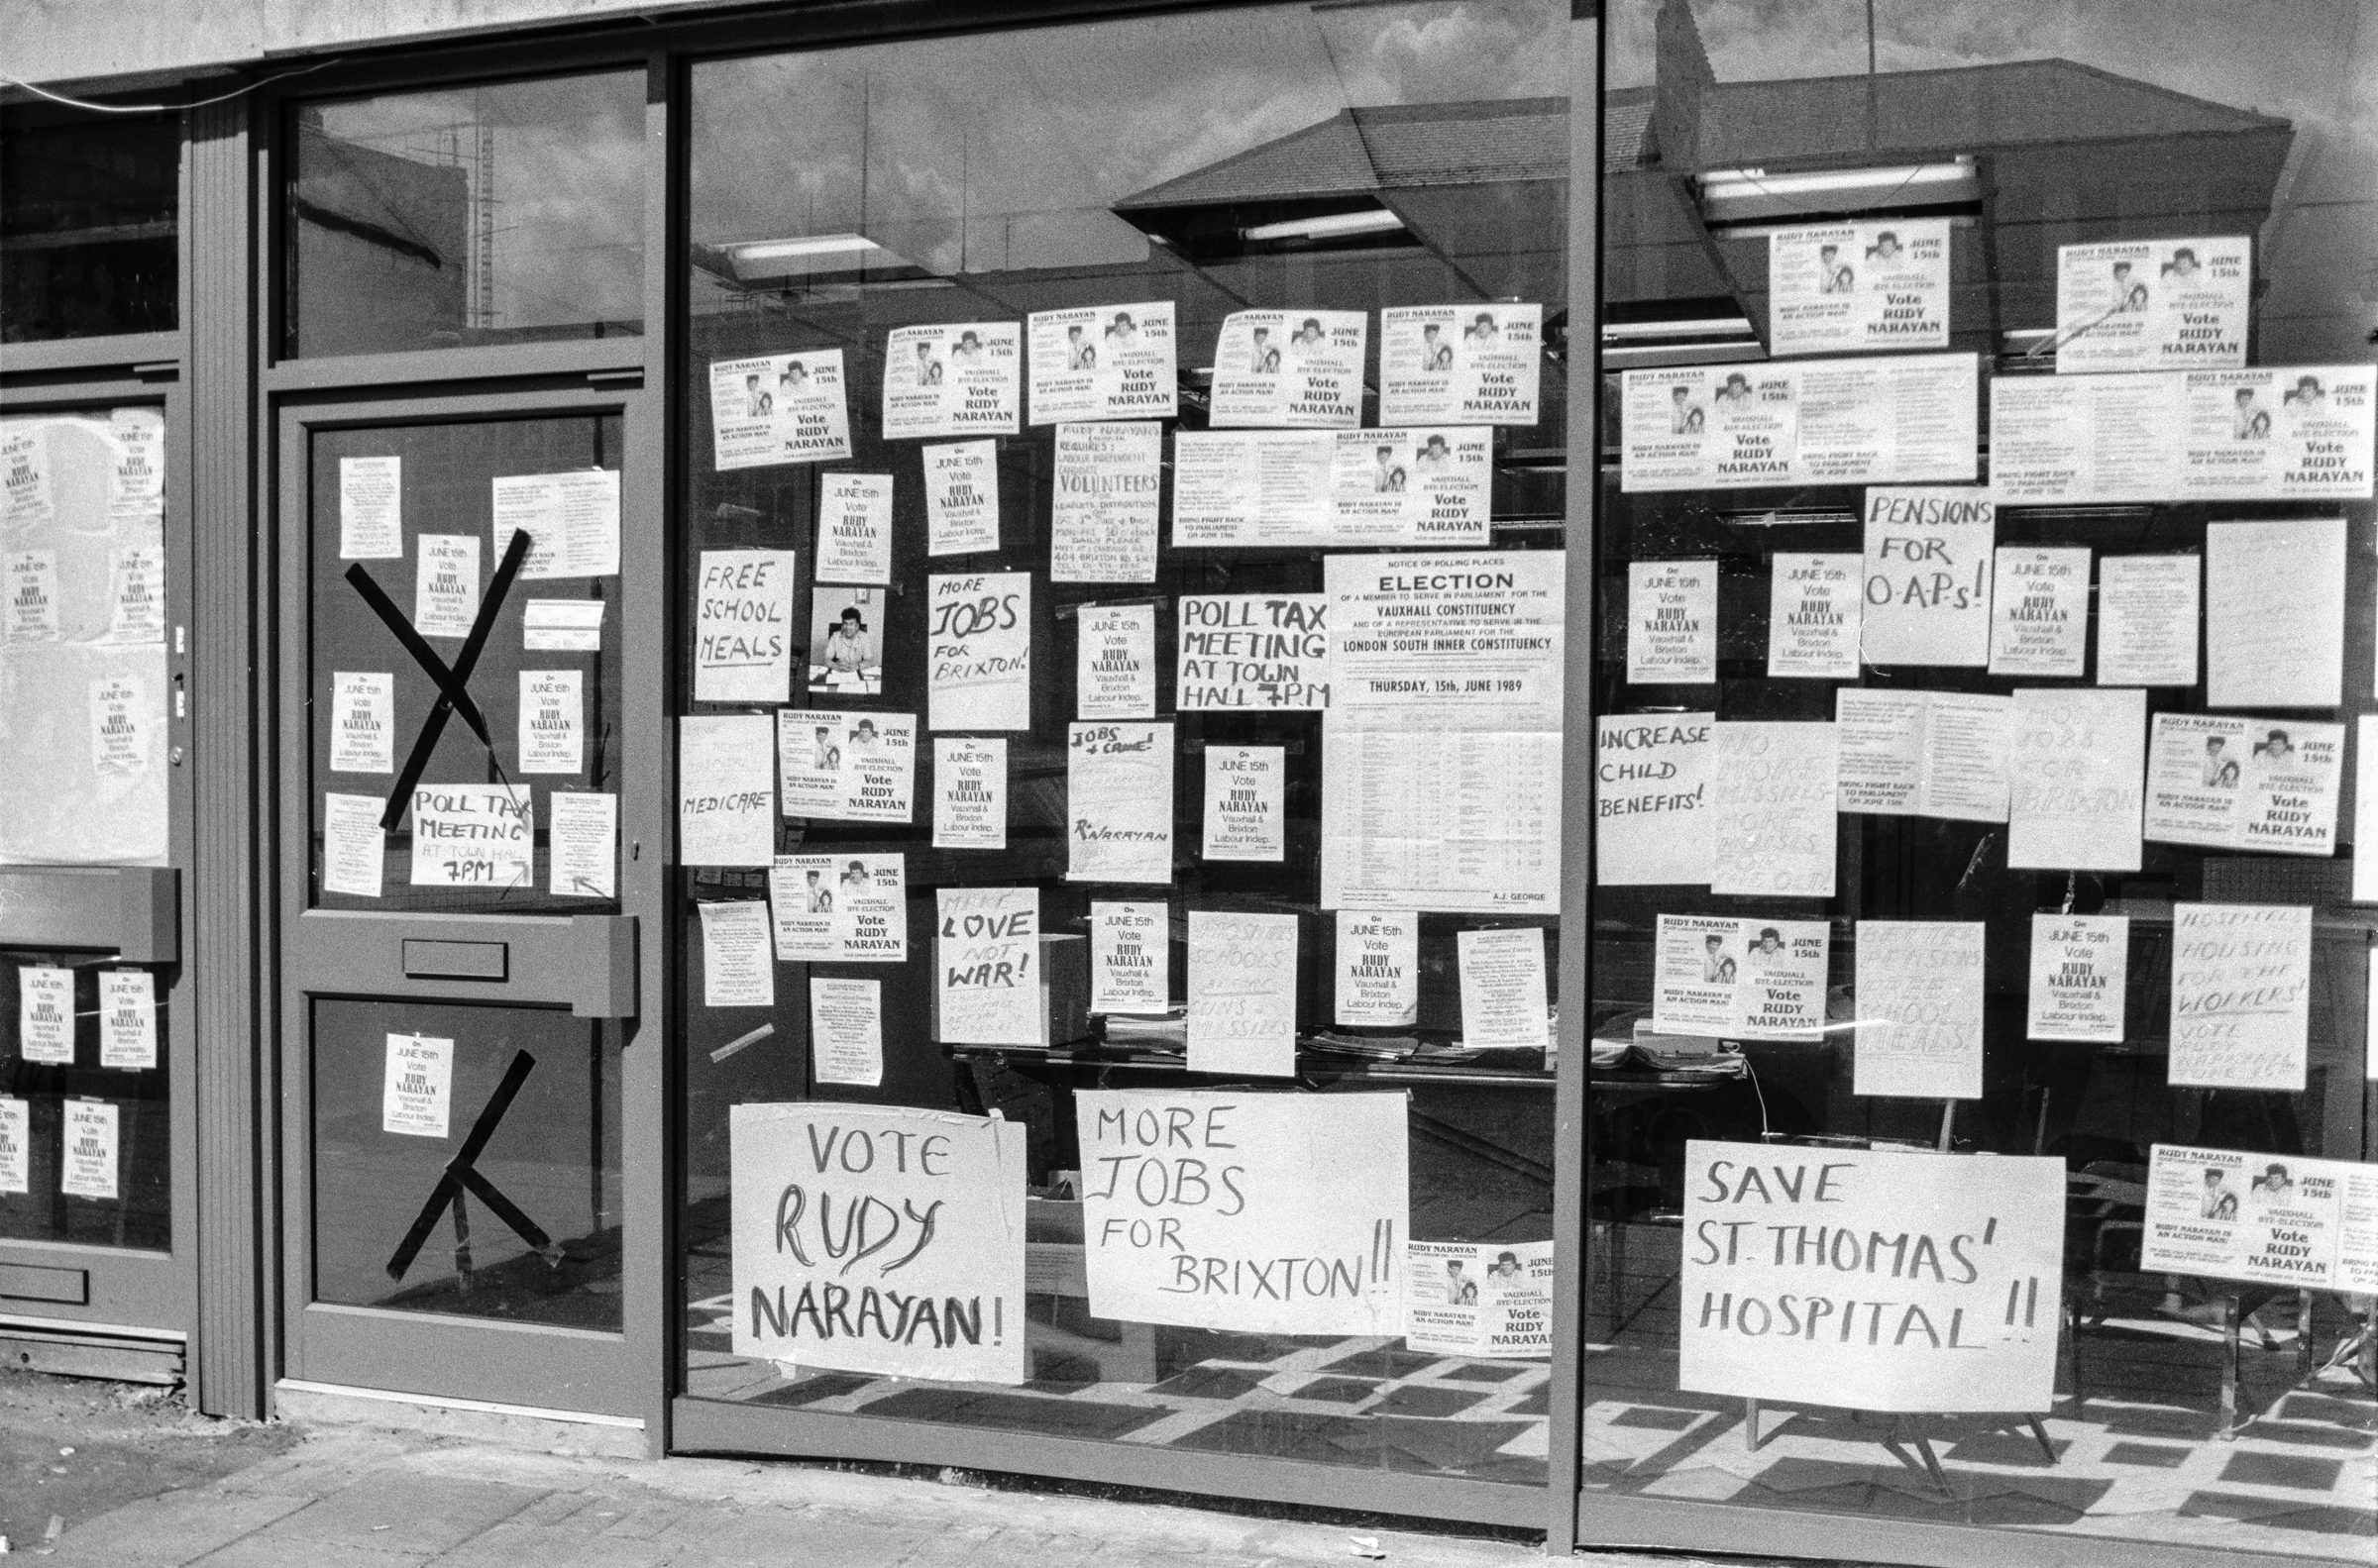 Vote Rudy Naryan, Shop Window, Brixton Rd, Brixton, Lambeth, 1989